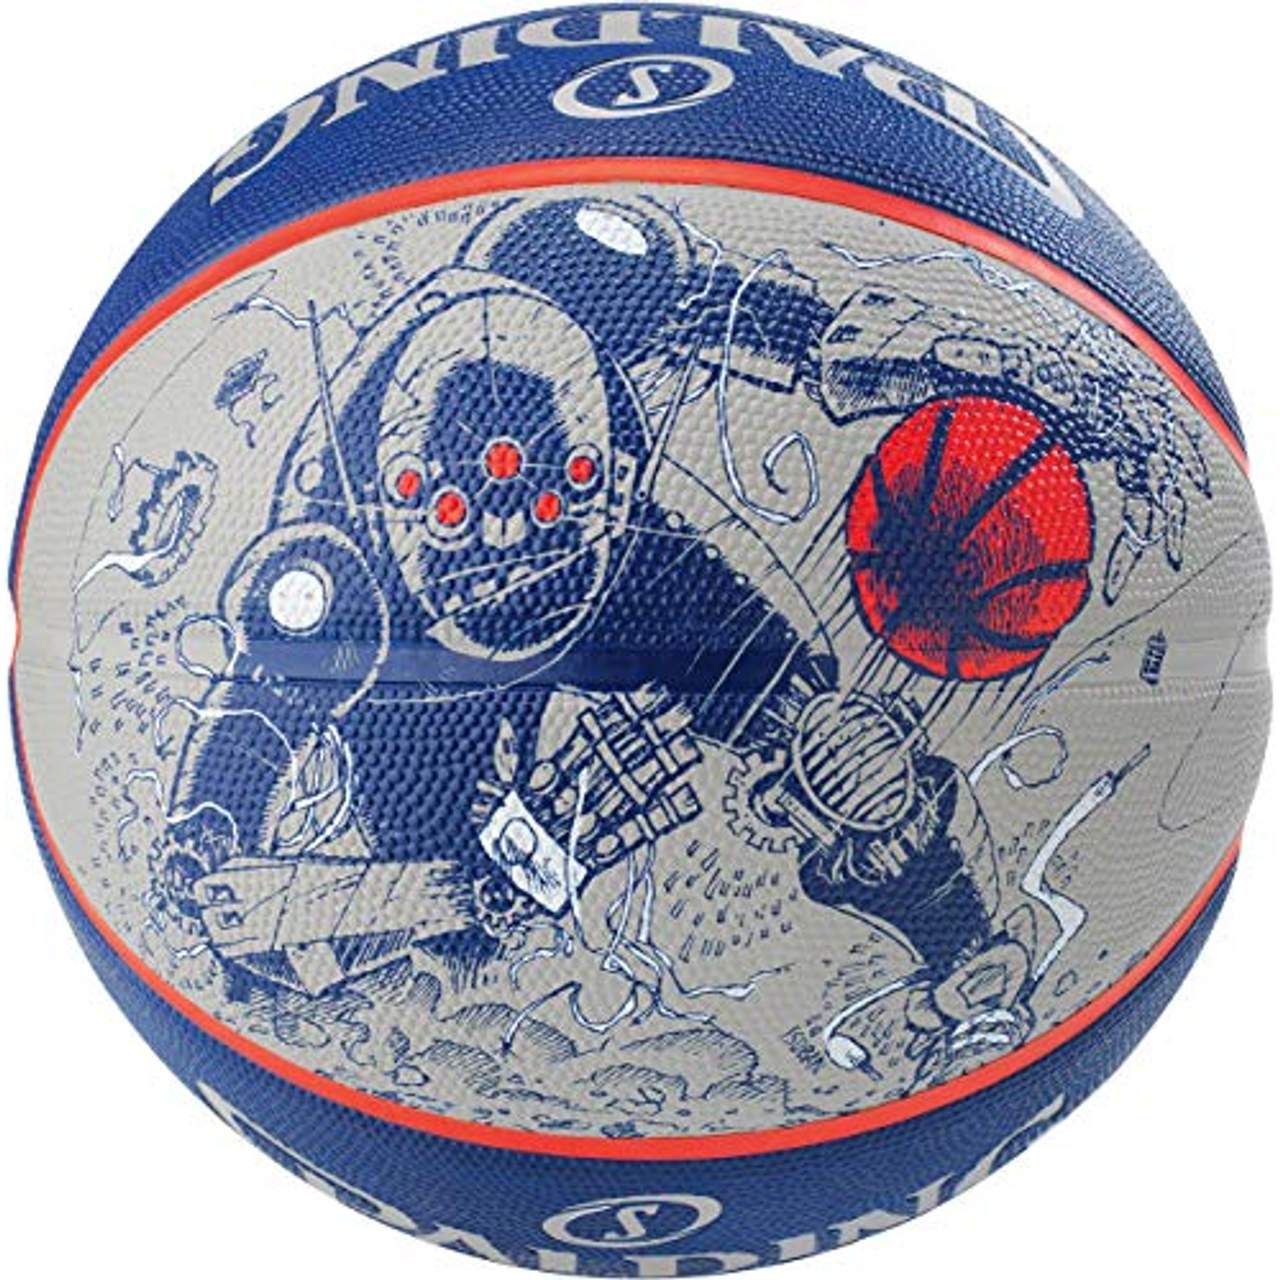 NBA Sketch Robot Spalding Basketball Ball